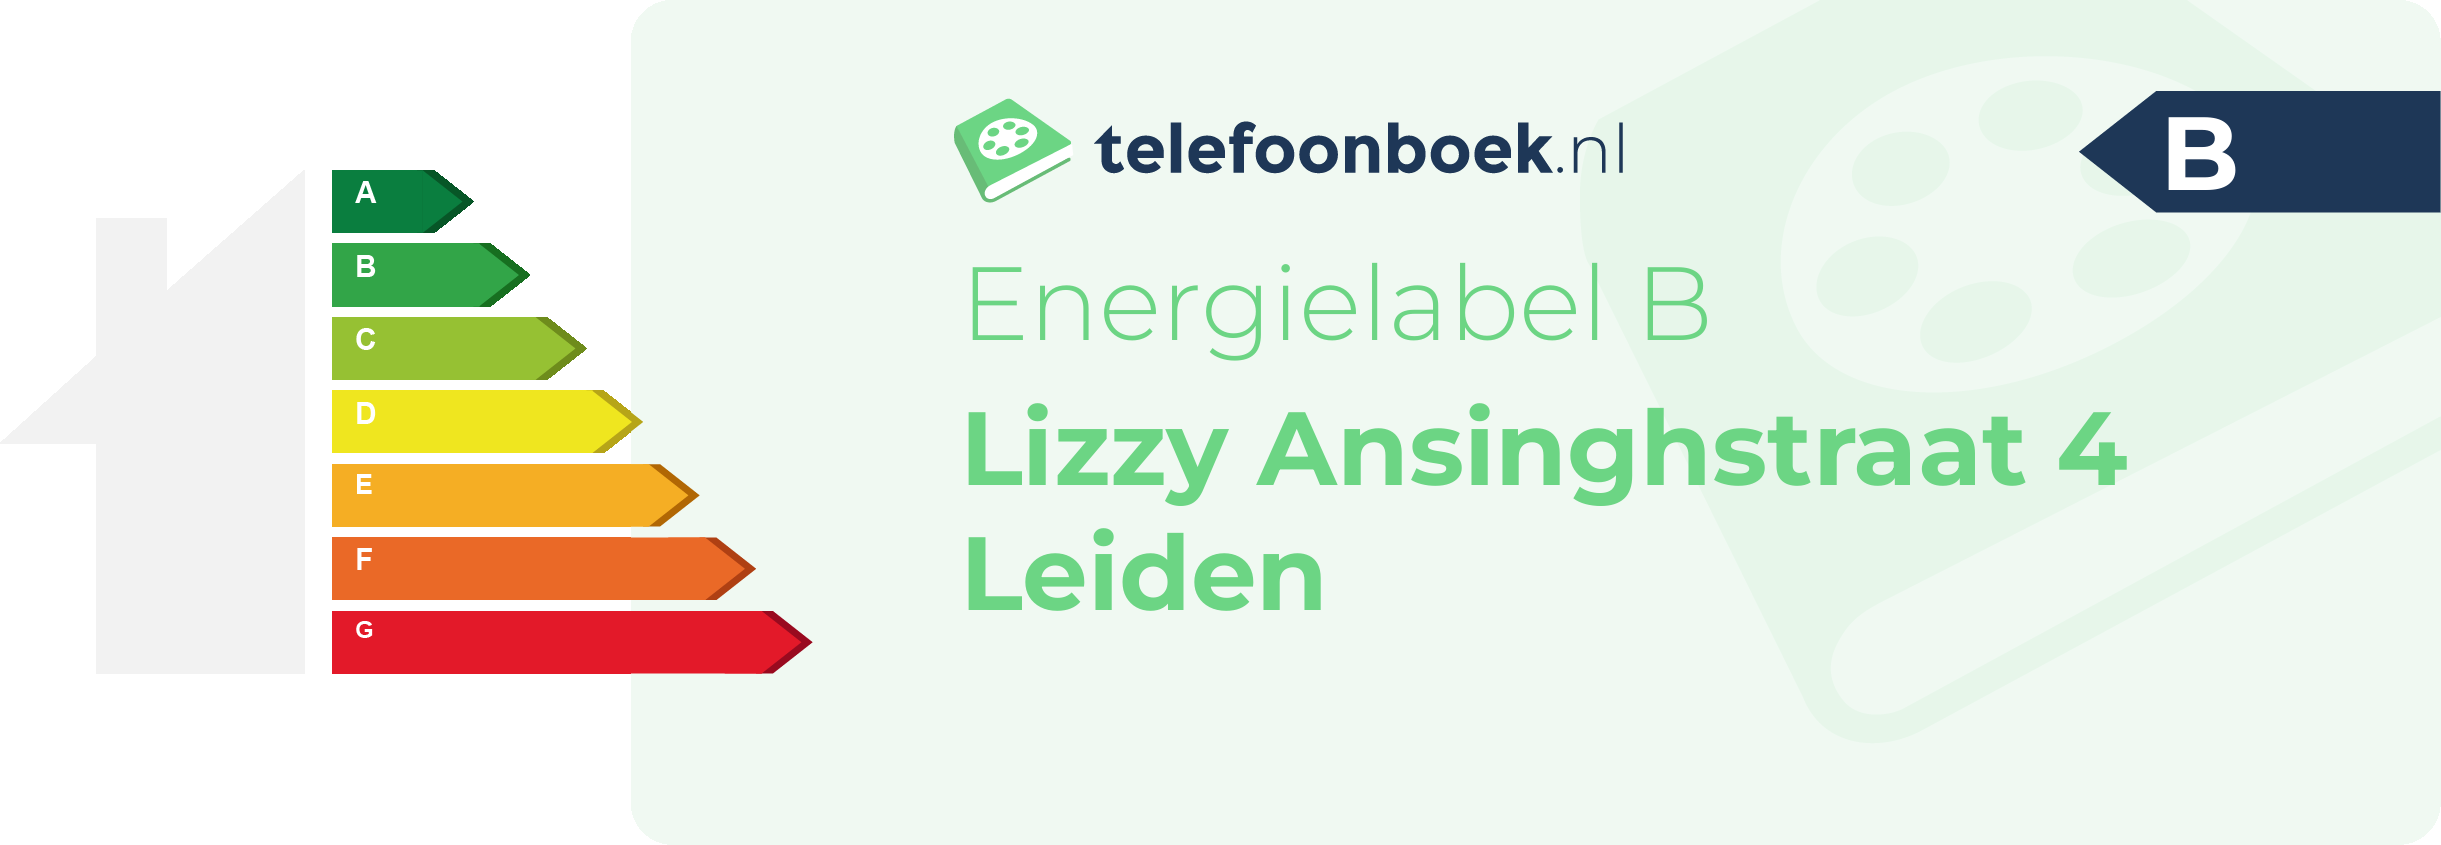 Energielabel Lizzy Ansinghstraat 4 Leiden